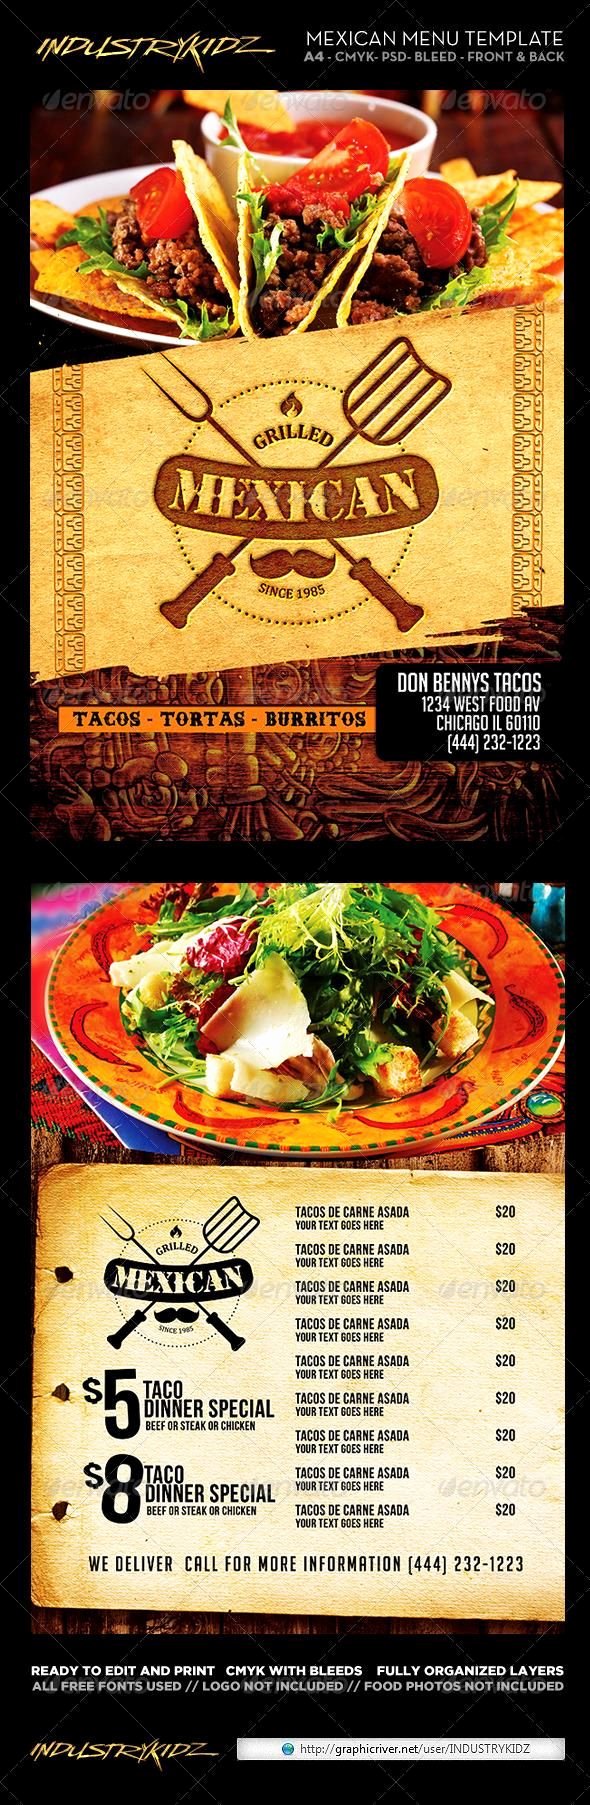 Mexican Restaurant Menu Template Unique 26 Best Mexican Menus Images On Pinterest